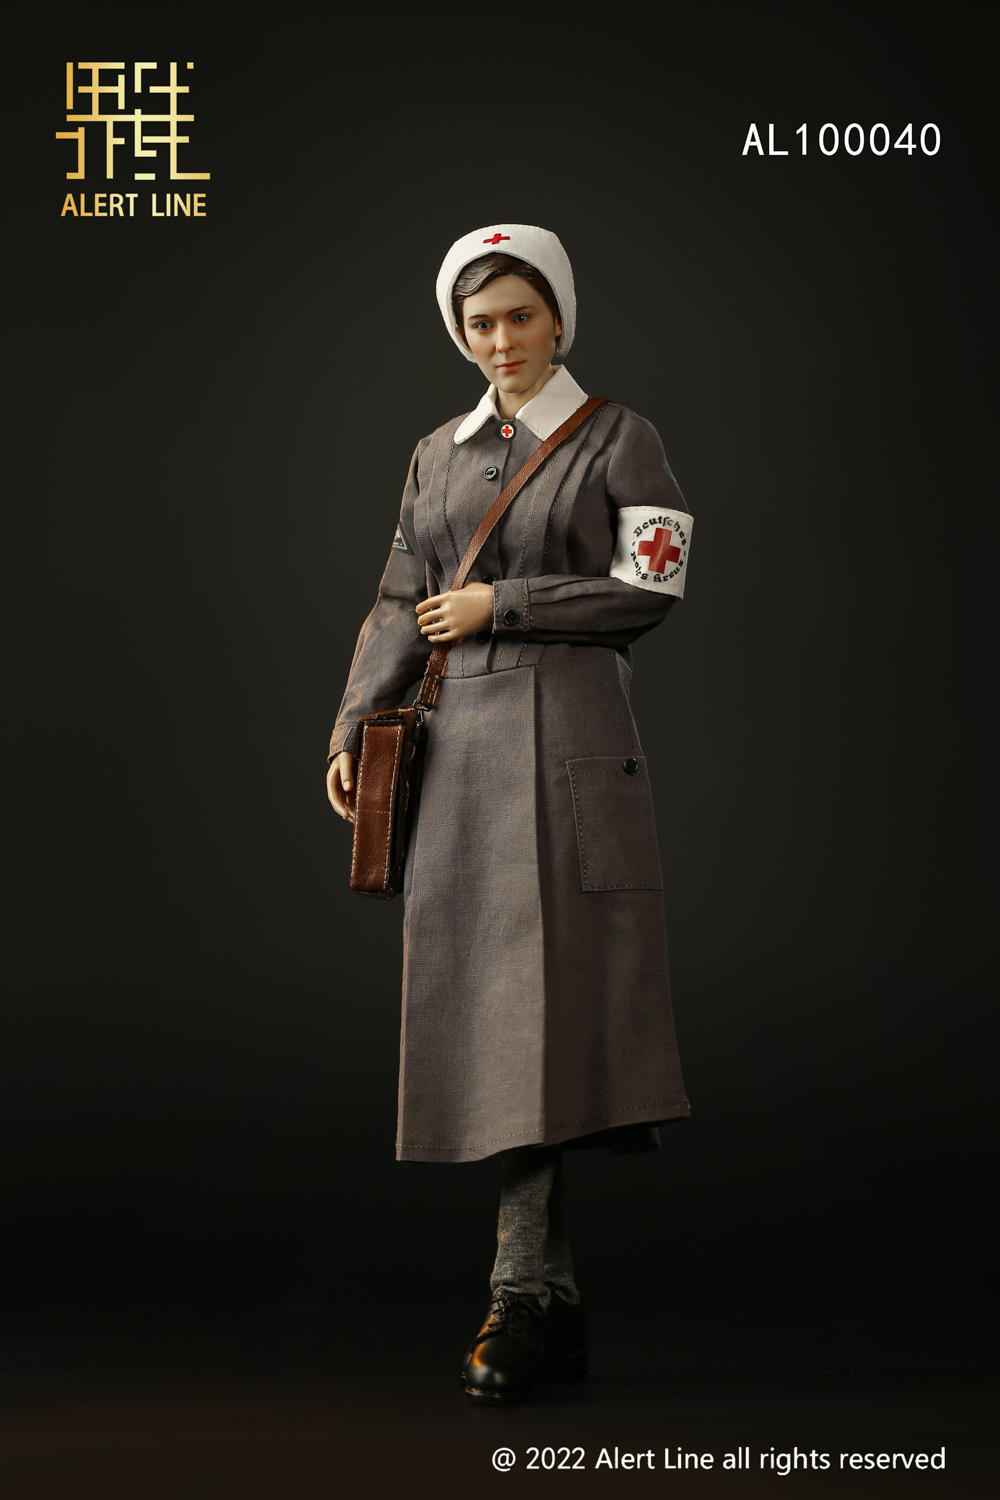 nurse - NEW PRODUCT: Alert Line: AL100040 1/6 Scale WWII Nurse Action Figure 19434610